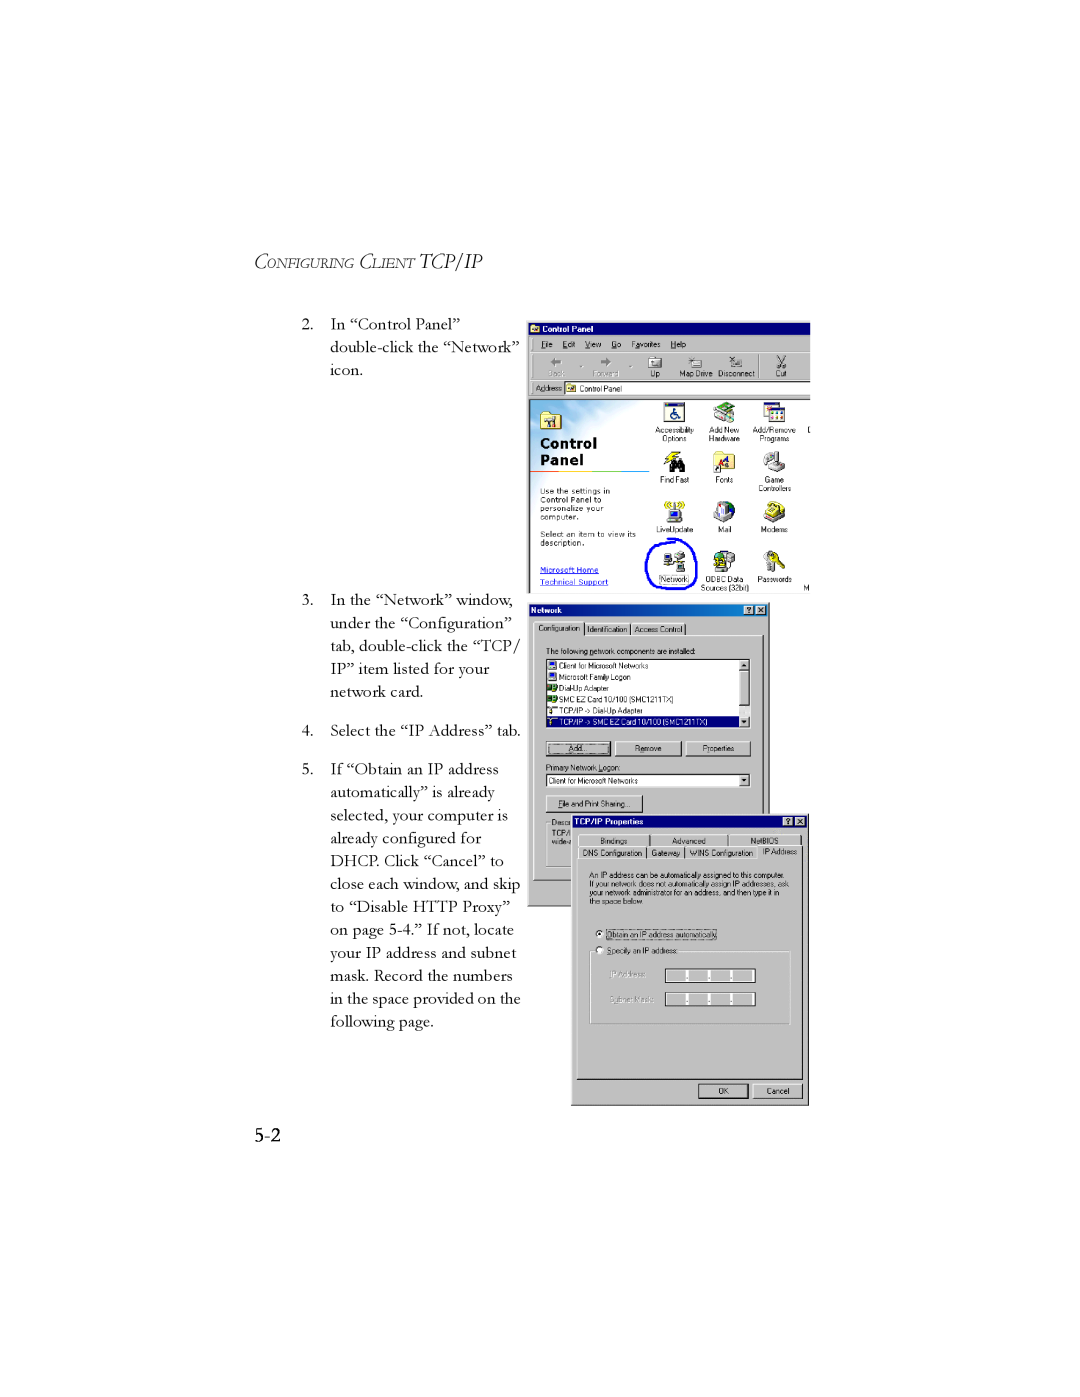 SMC Networks SMC7404BRA EU manual In “Control Panel” double-click the “Network” icon 